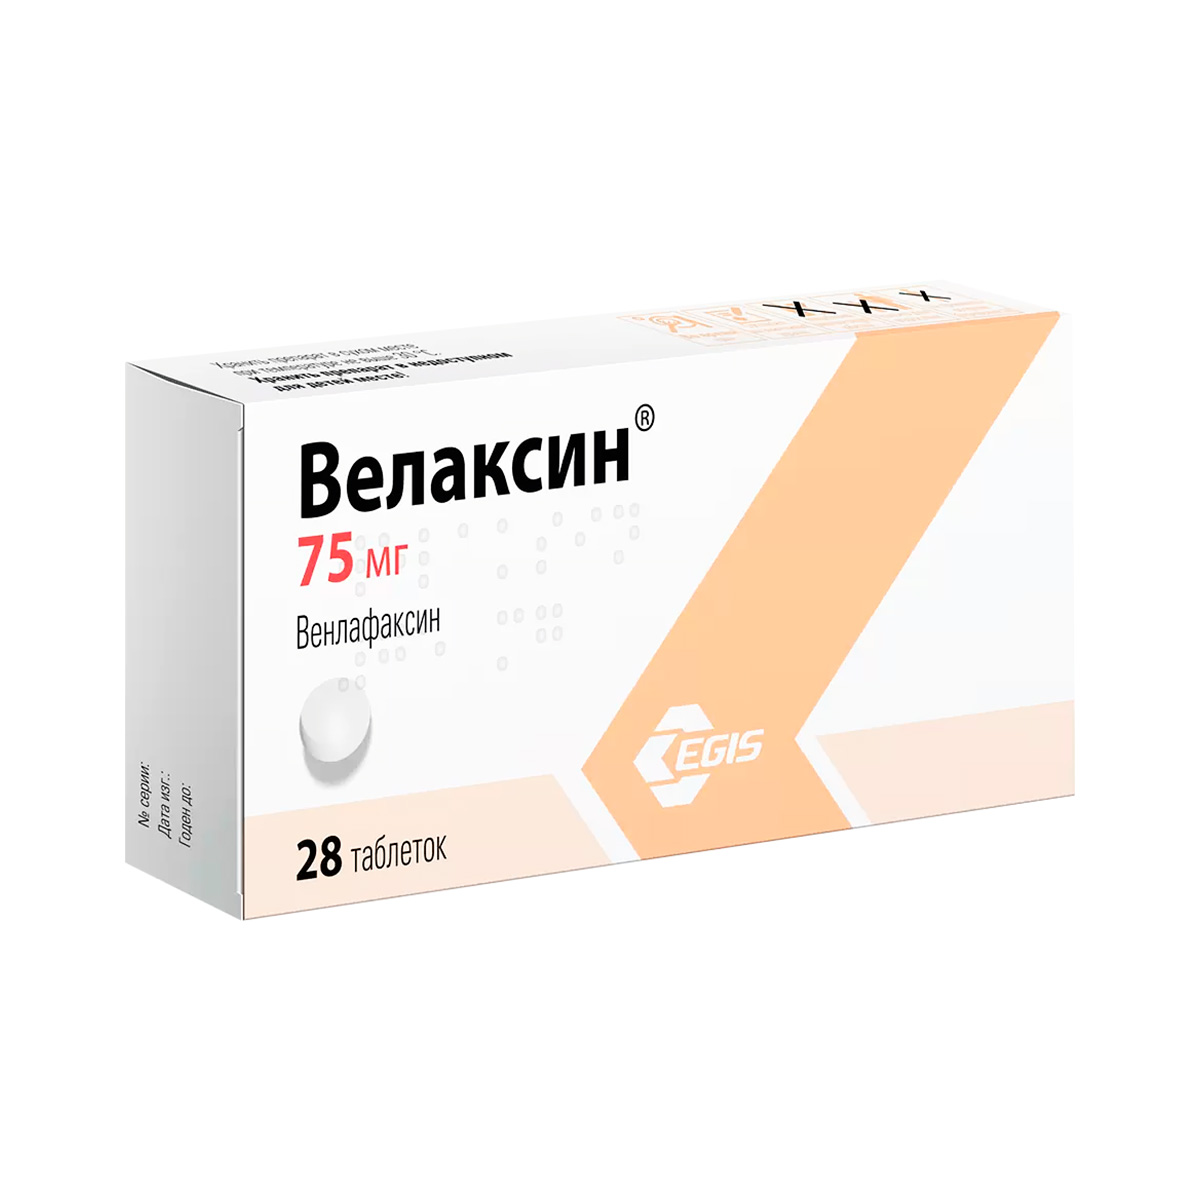 Велаксин 75 мг капсулы пролонгированного действия 28 шт